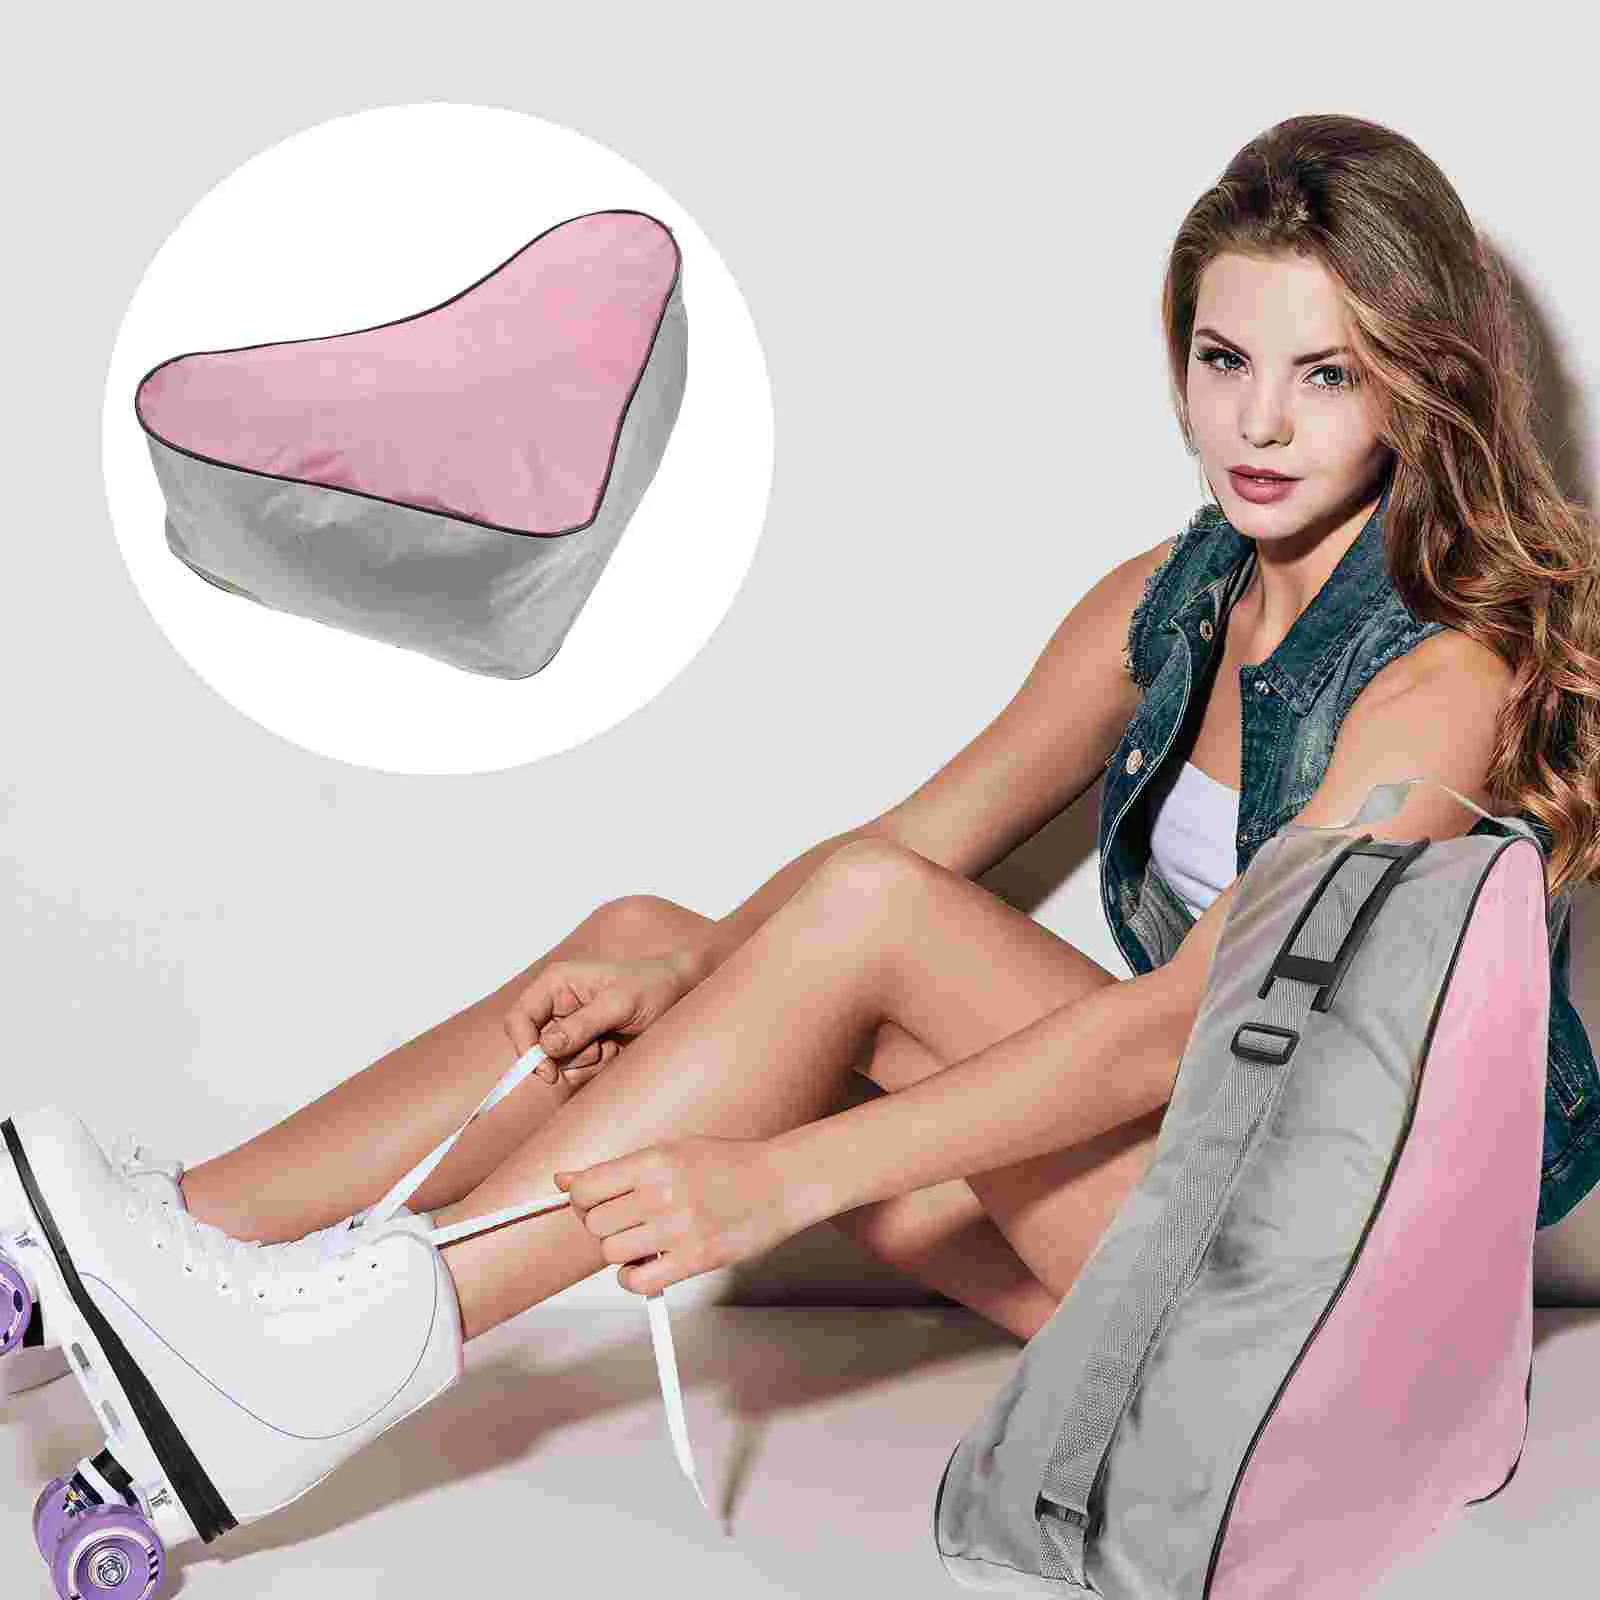 

Сетчатая тканевая сумка-тоут, треугольная сумка для катания на коньках, сумка через плечо, яркая (розовая)